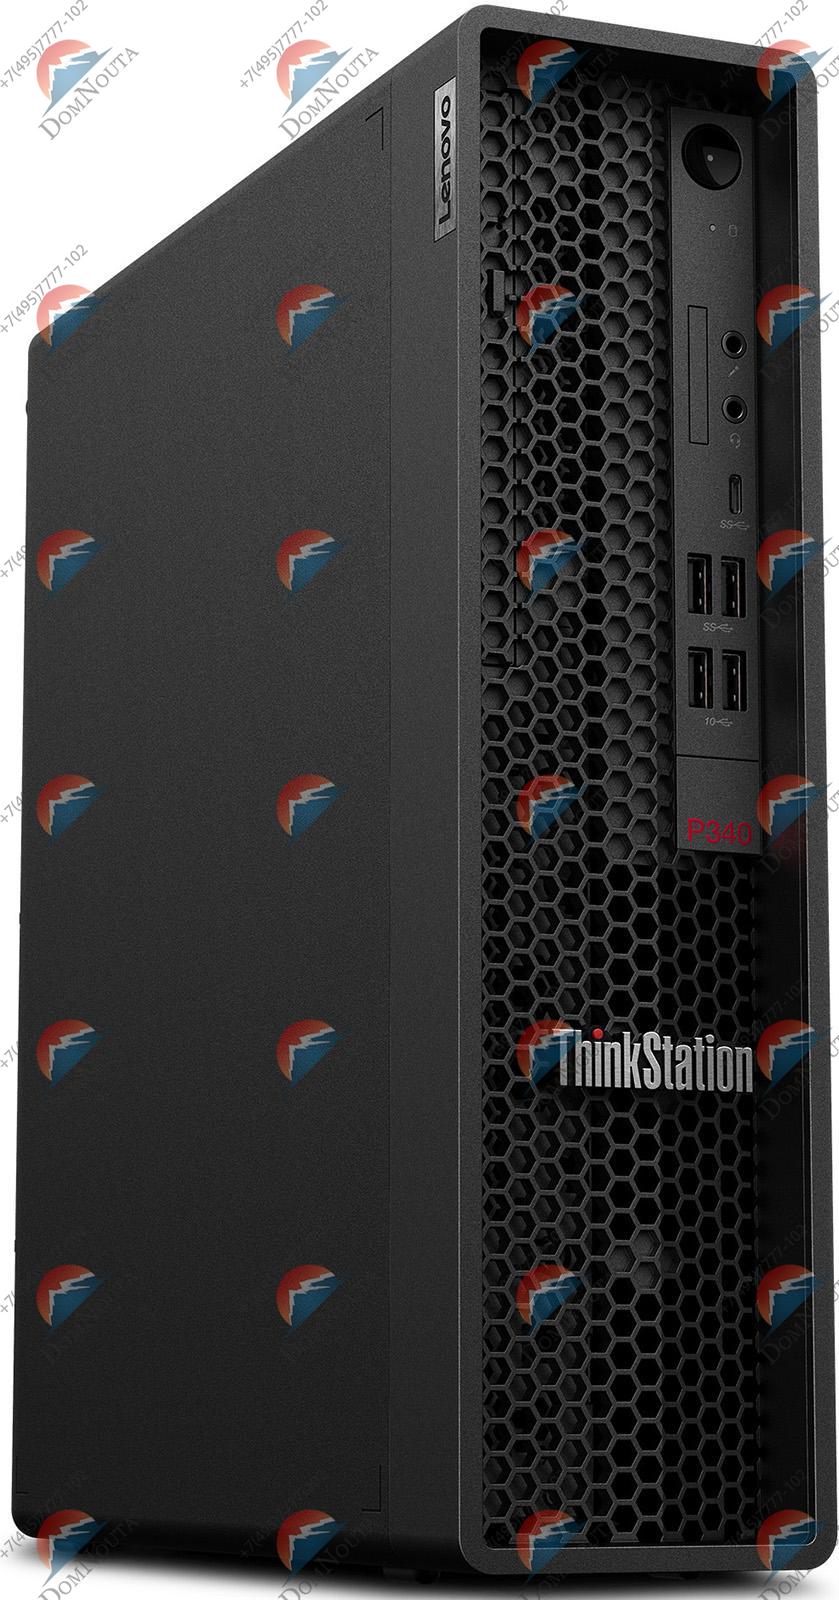 Компьютер Lenovo ThinkStation P340 SFF